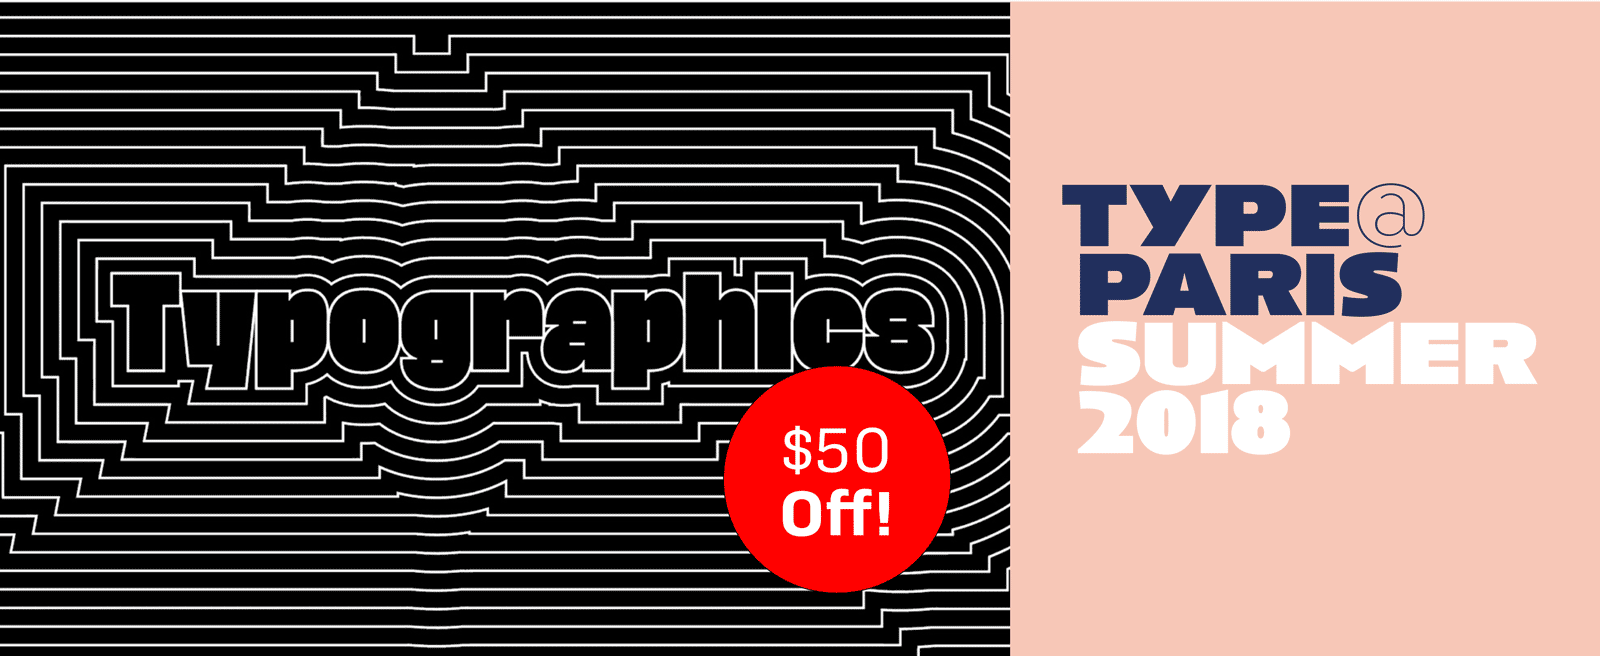 Typographics NY — TypeParis 2018